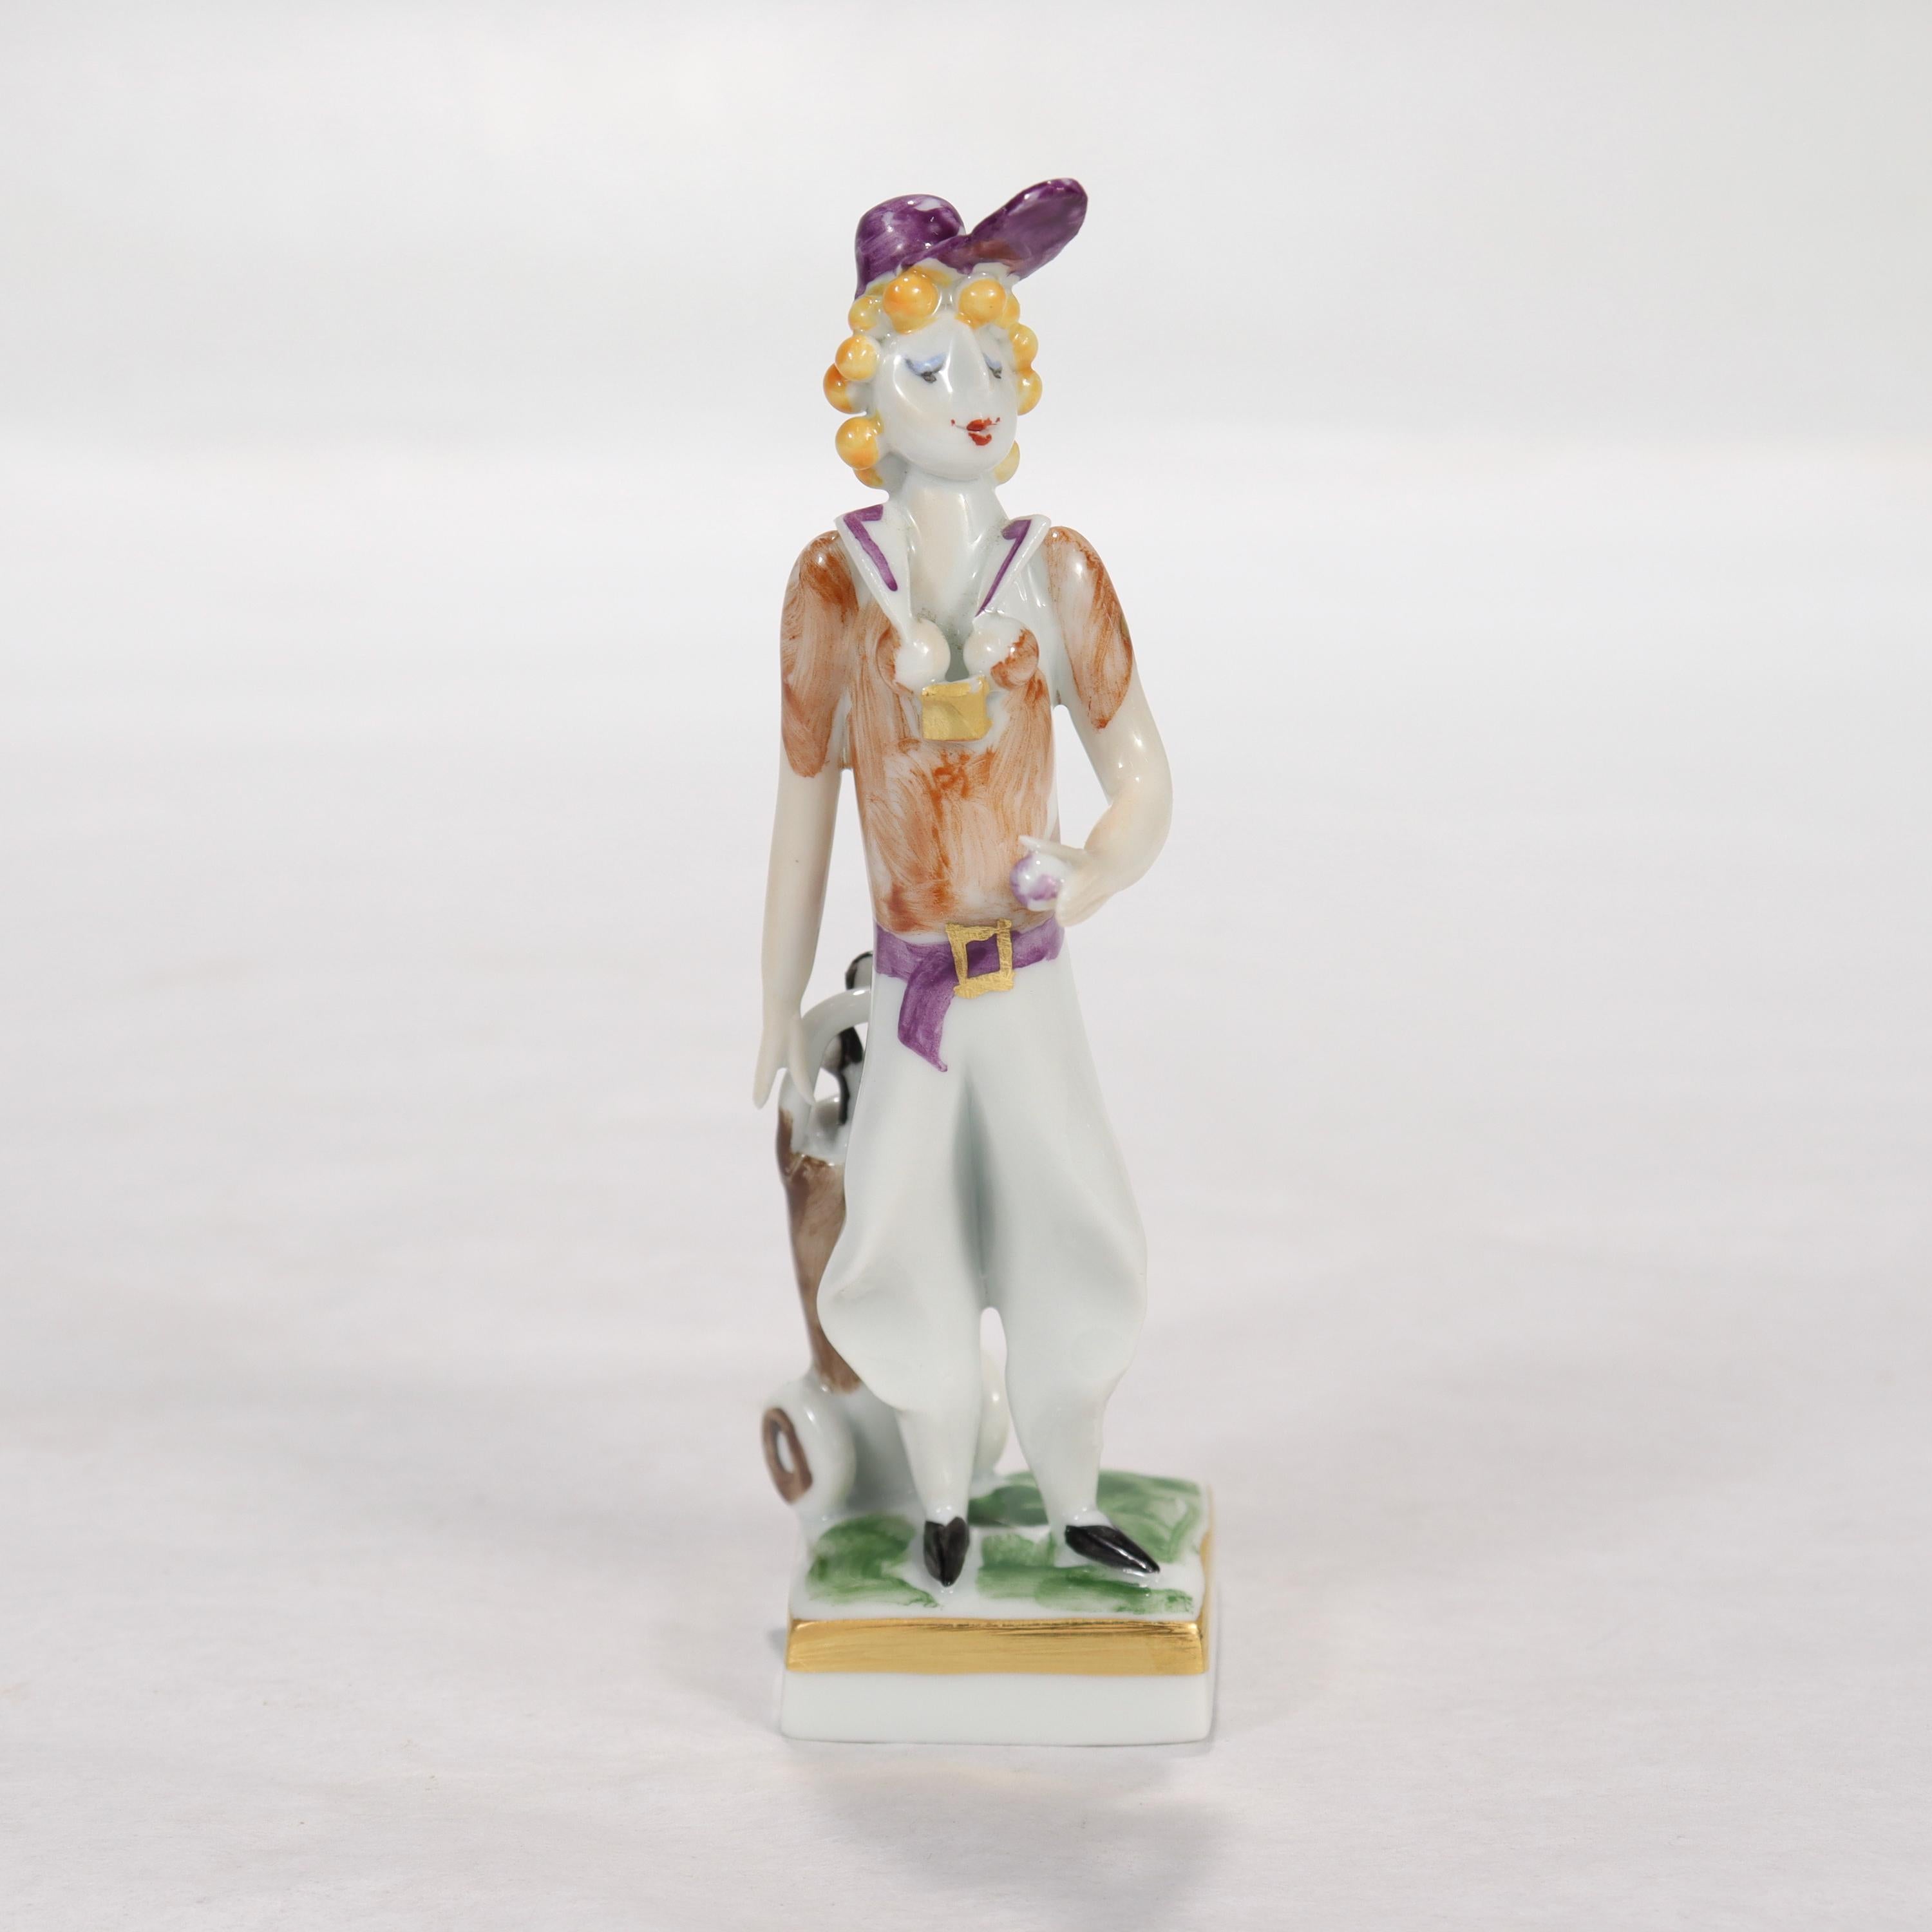 Une fine figurine ou miniature en porcelaine de Meissen.

Par Peter Strang. Strang est né à Dresde en 1935 et a obtenu un diplôme en sculpture de l'Académie des Beaux-Arts de Dresde en 1960. Peter était l'un des membres fondateurs du collectif